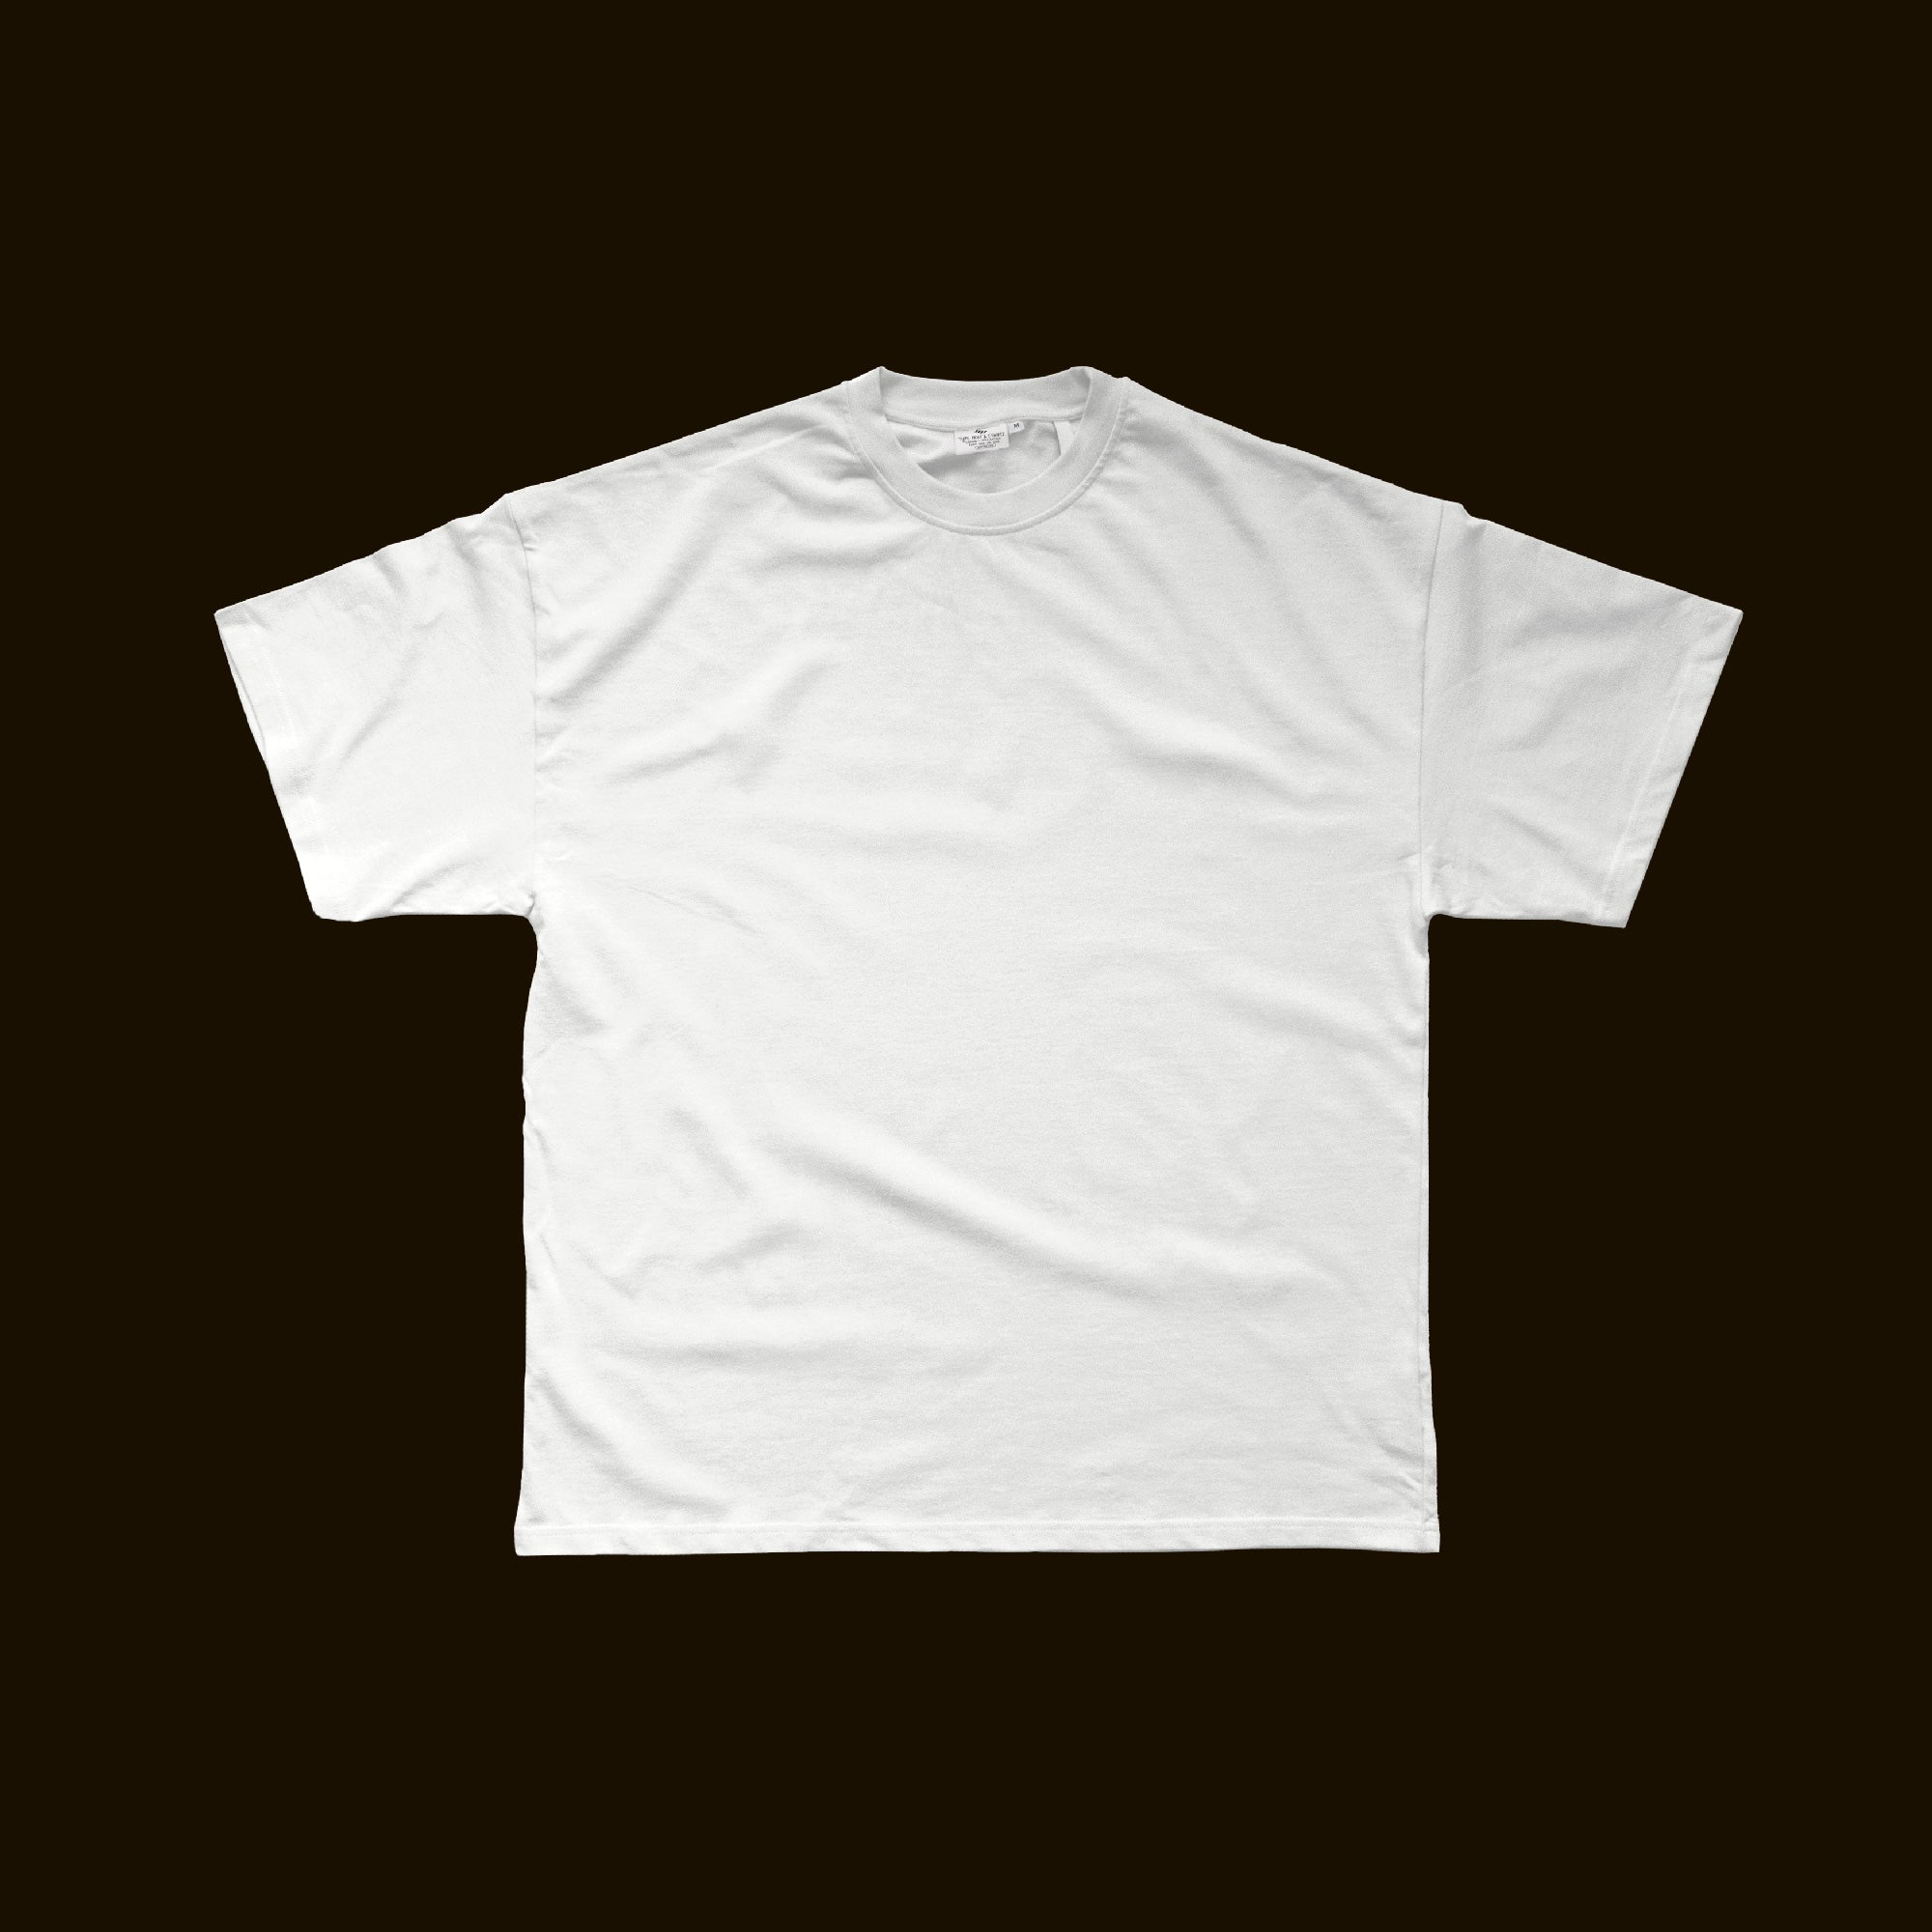 Blurred 'F' T-shirt